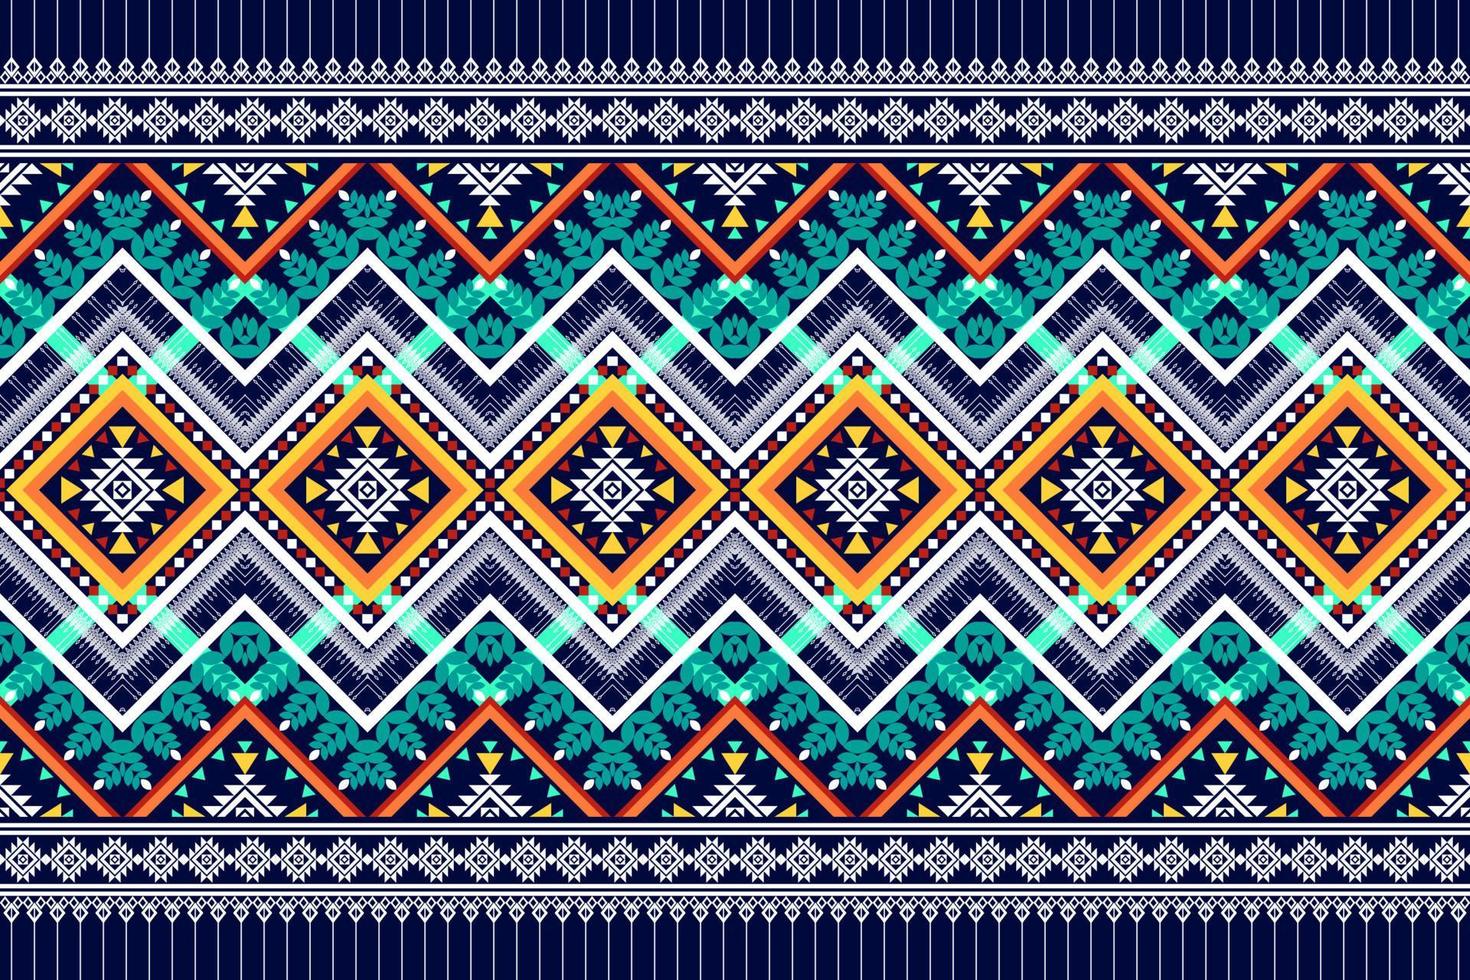 conception de modèle sans couture ethnique géométrique. tapis en tissu aztèque ornement mandala chevron décoration textile papier peint. dinde tribale broderie traditionnelle indienne africaine fond d'illustration vectorielle vecteur